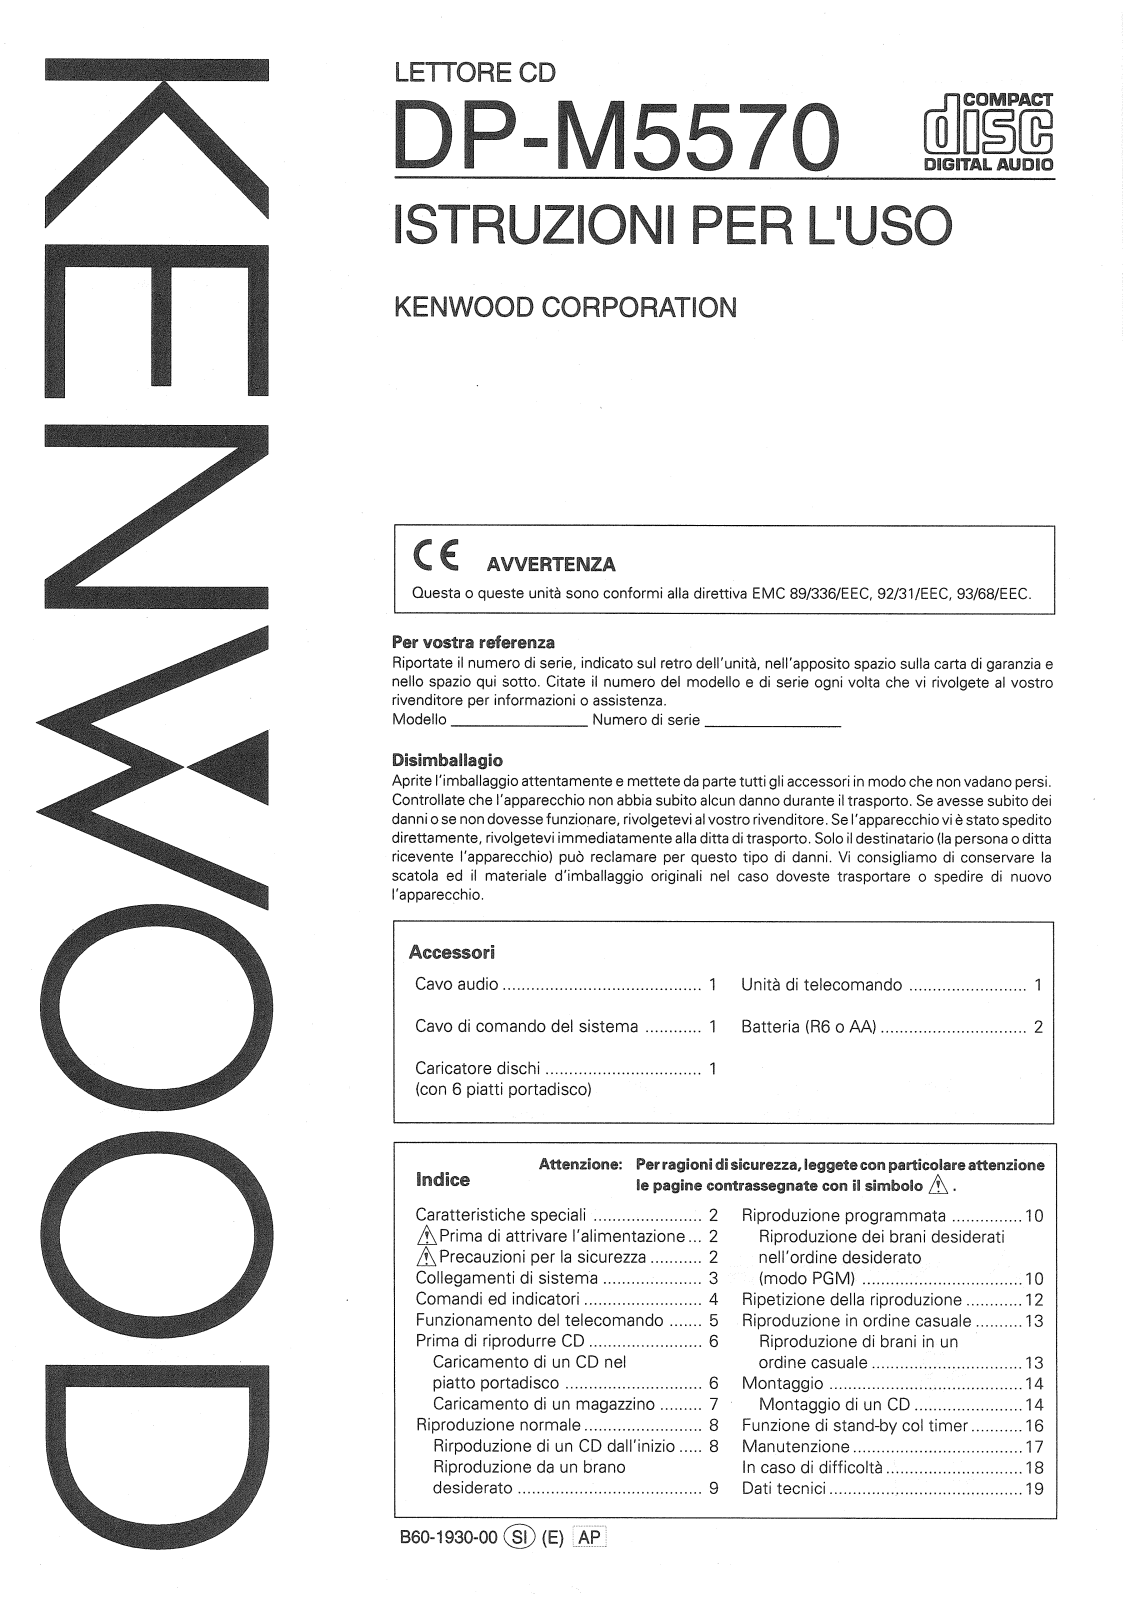 Kenwood DP-M5570 Manual